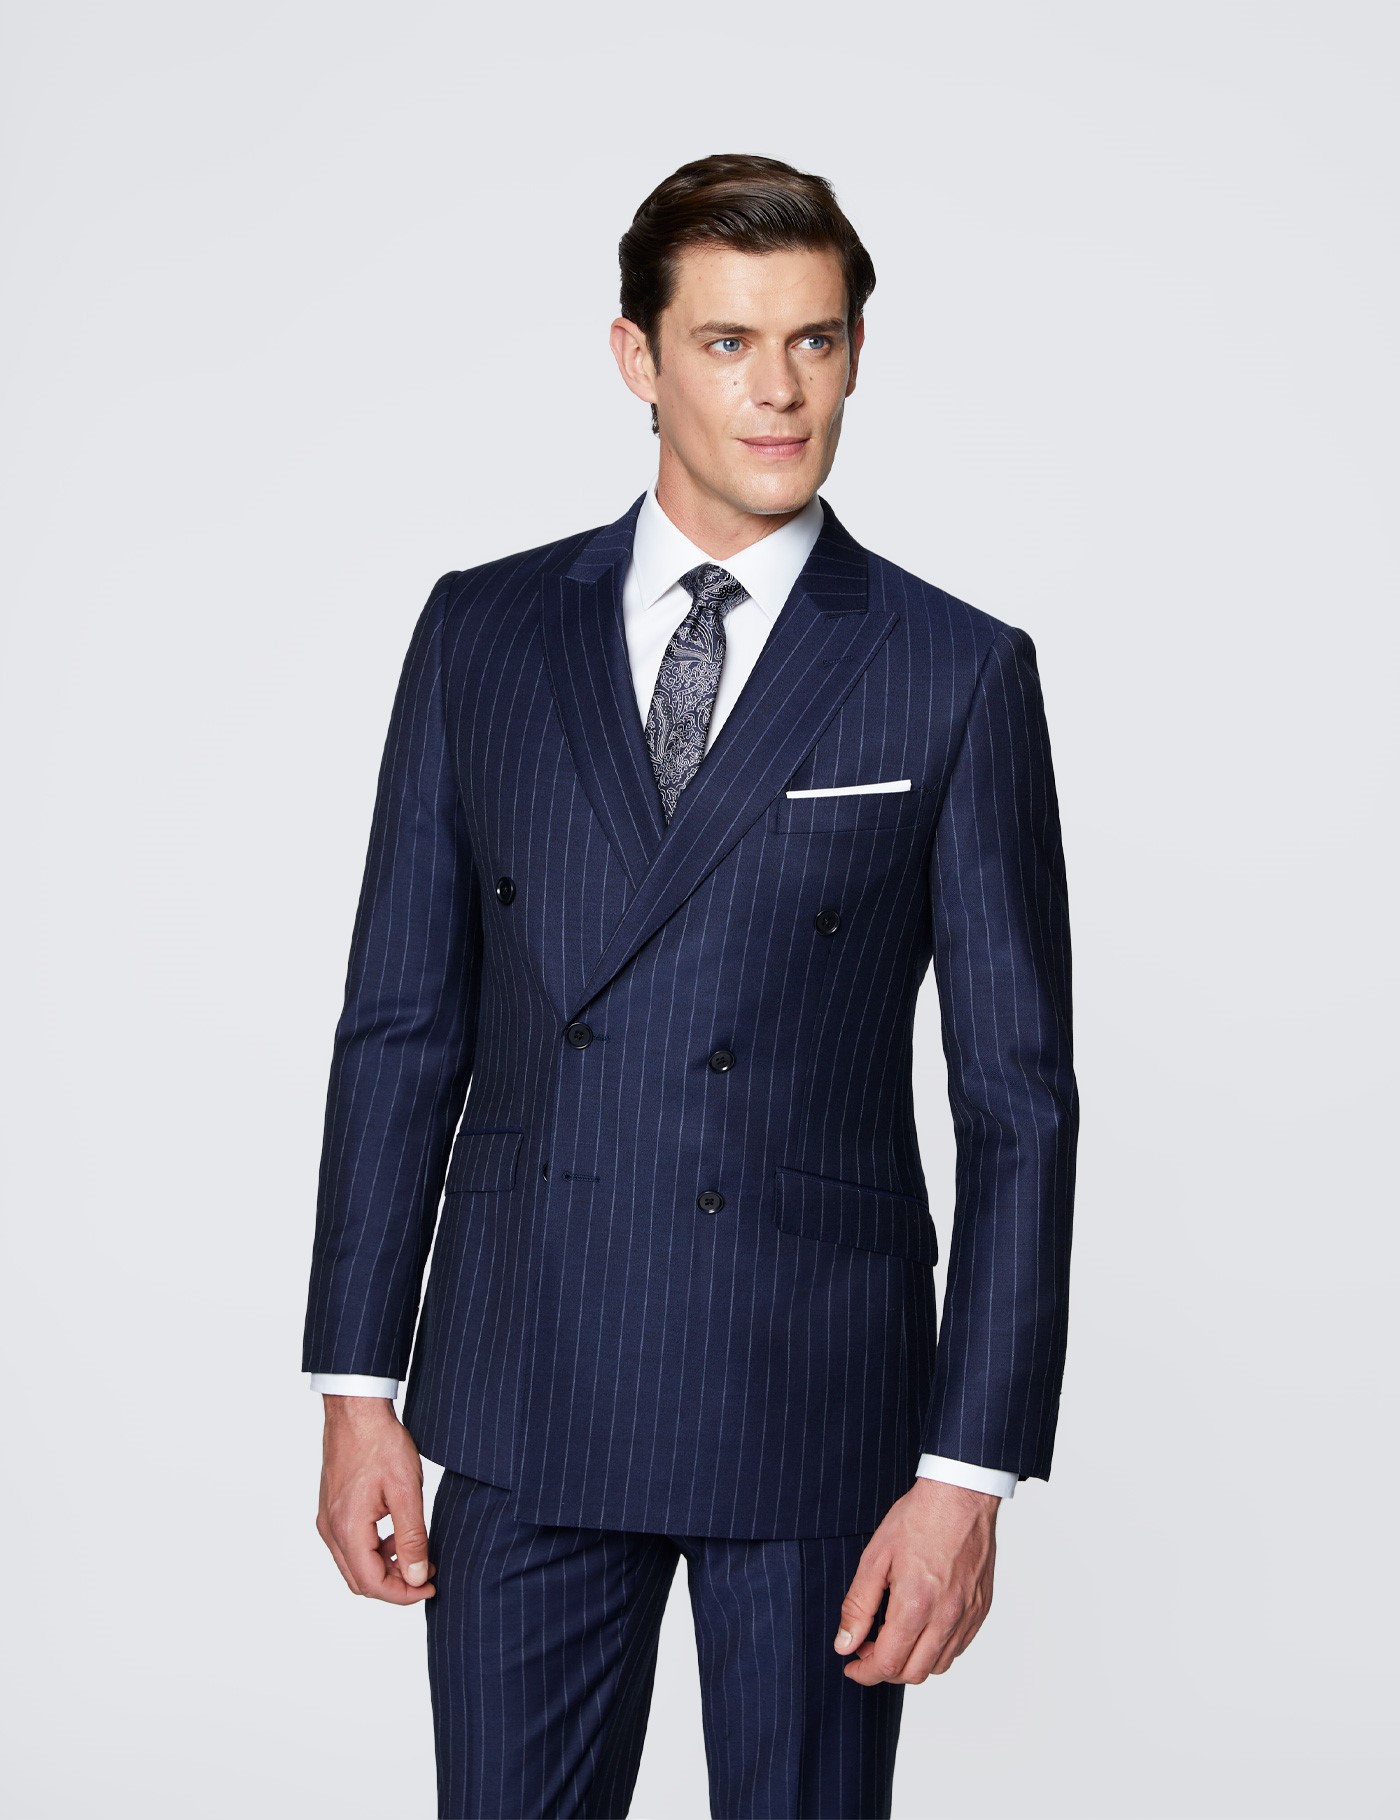 How To Wear A Suit Jacket Discount Factory | thilaptrinh.uit.edu.vn